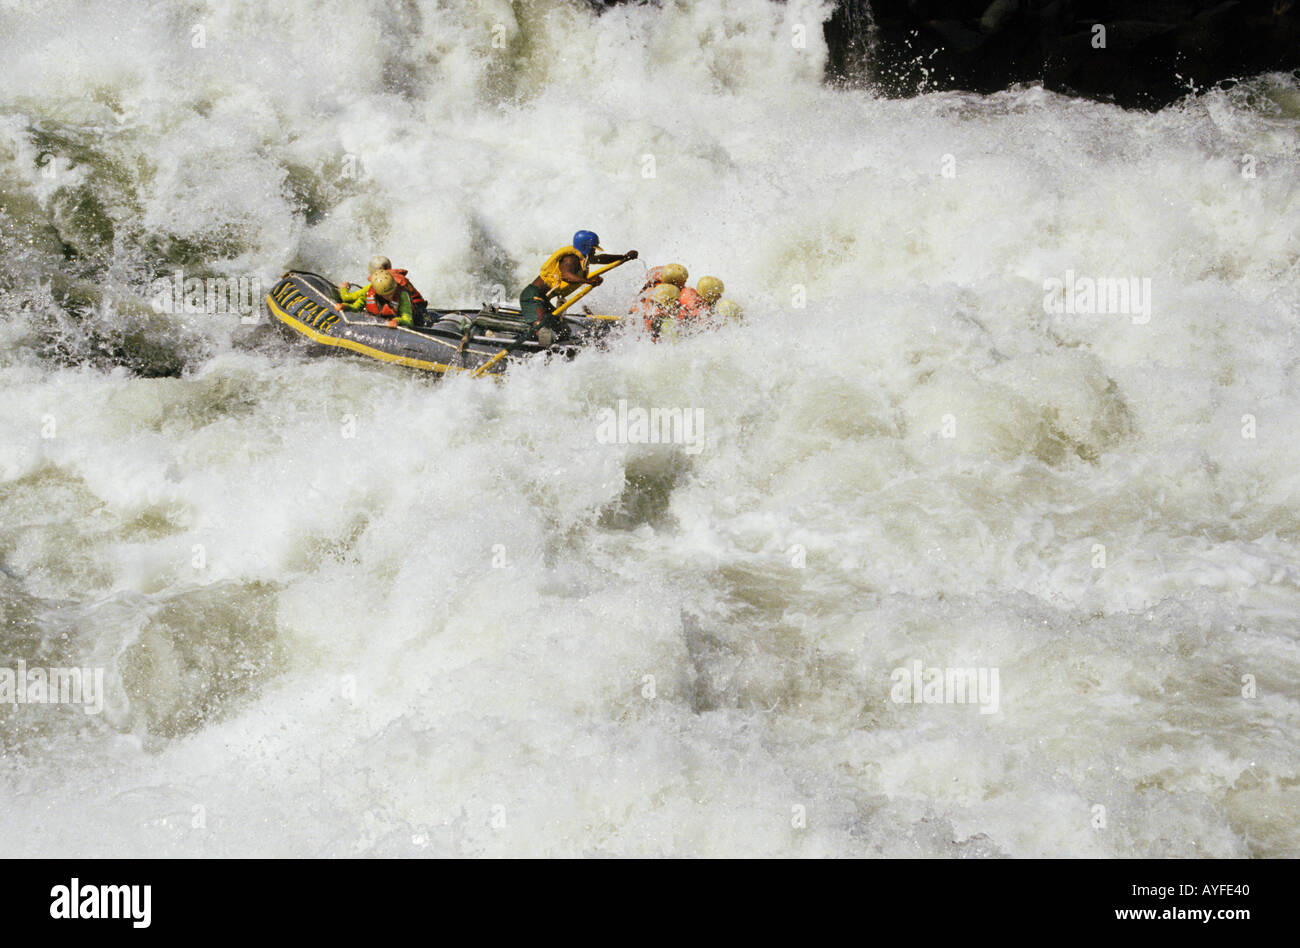 Wildwasser-rafting an rapid 5 Zambezi River Simbabwe Sambia Grenze Afrika Stockfoto